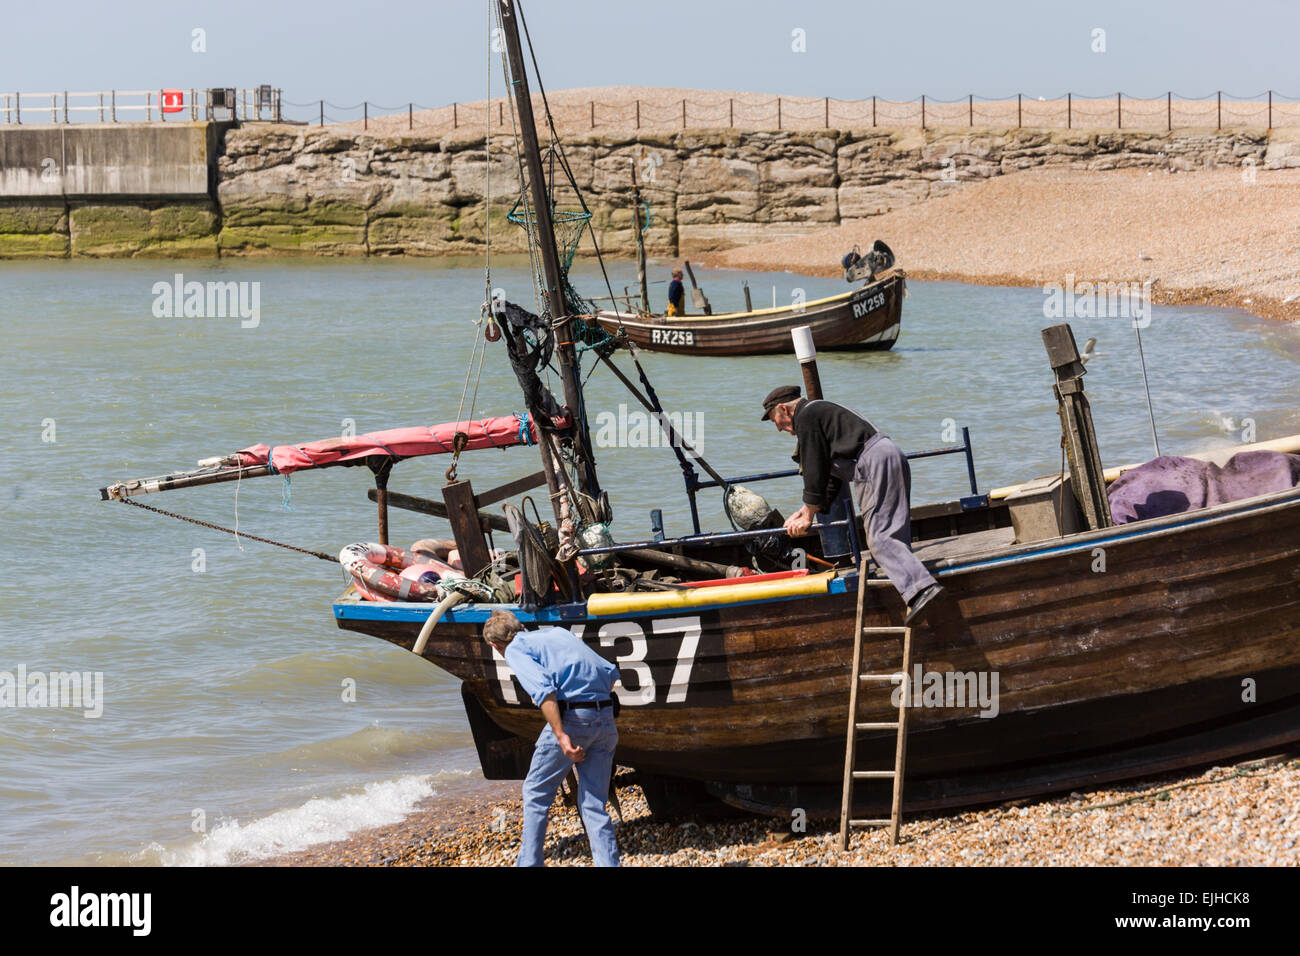 Bateaux de pêche commerciale et des opérations sur la plage à Hastings, Sussex, Angleterre Banque D'Images